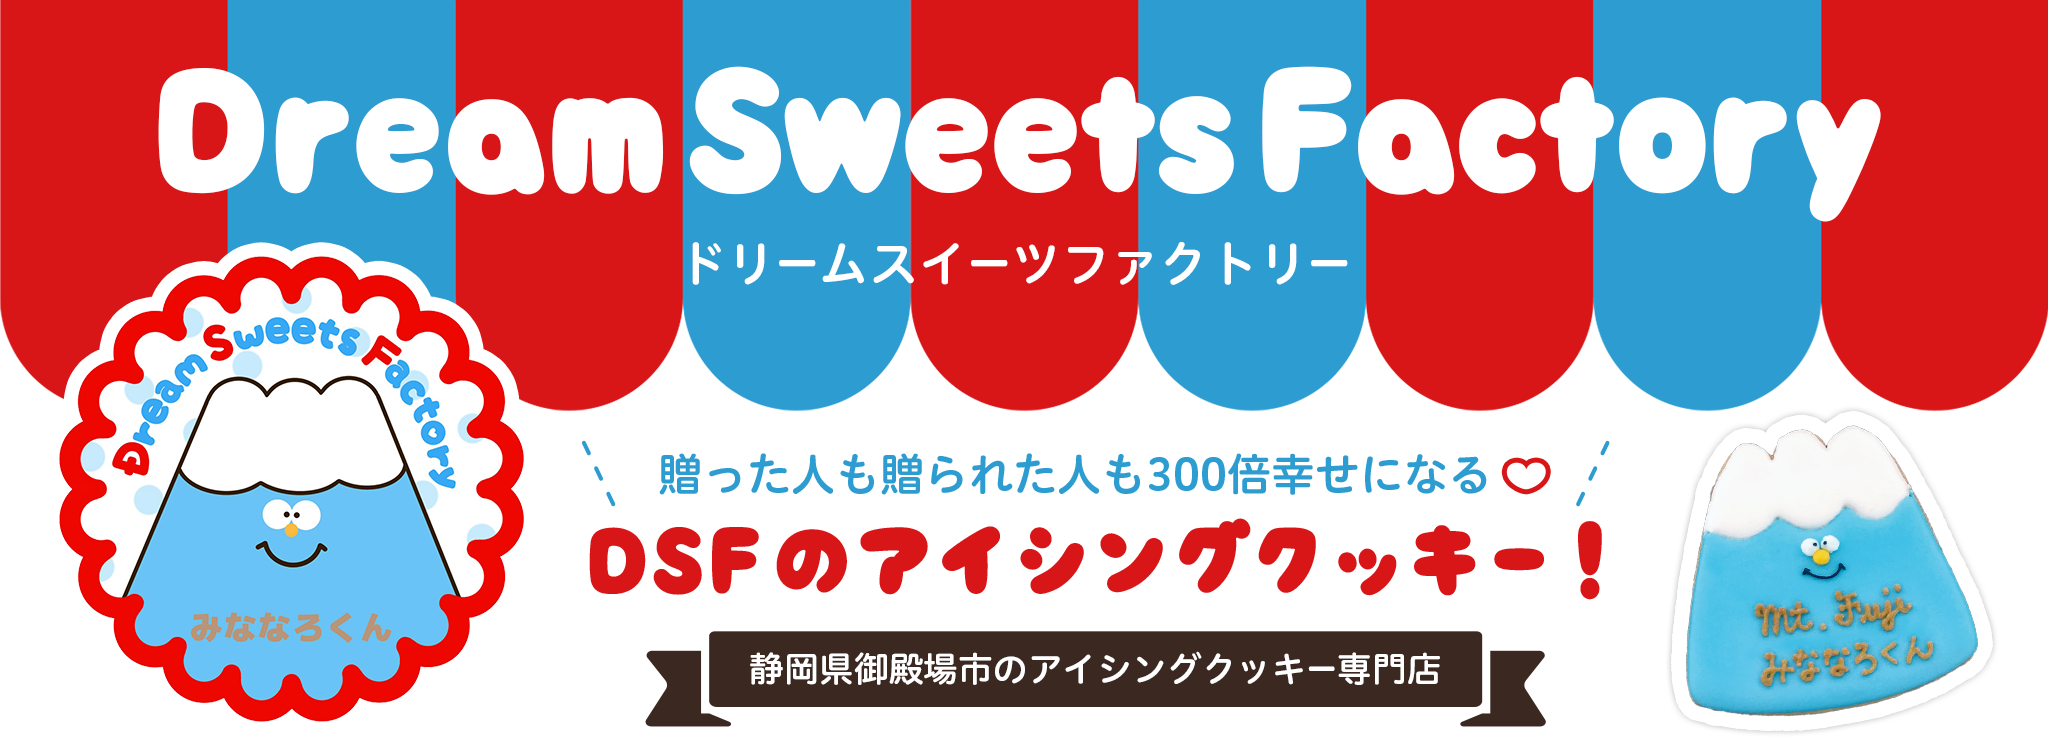 アイシングクッキーショップ Dream Sweets Factory の記事 Base Mag